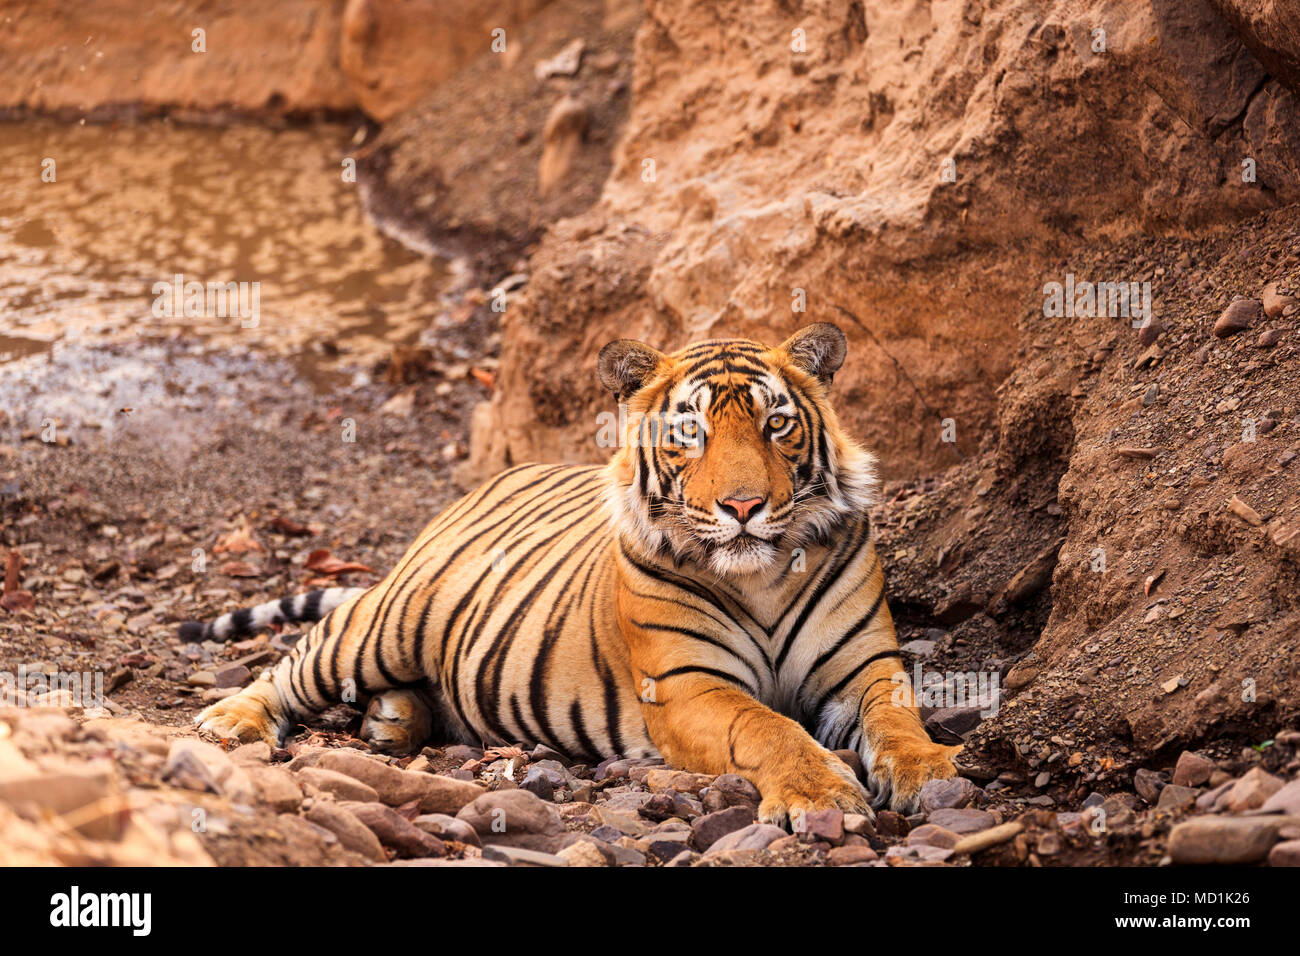 Beeindruckende männlichen Sub-nach Bengal Tiger (Panthera tigris) in Ruhe liegen auf felsigen Boden von einem Wasserloch, Ranthambore Nationalpark, Rajasthan, Nordindien Stockfoto